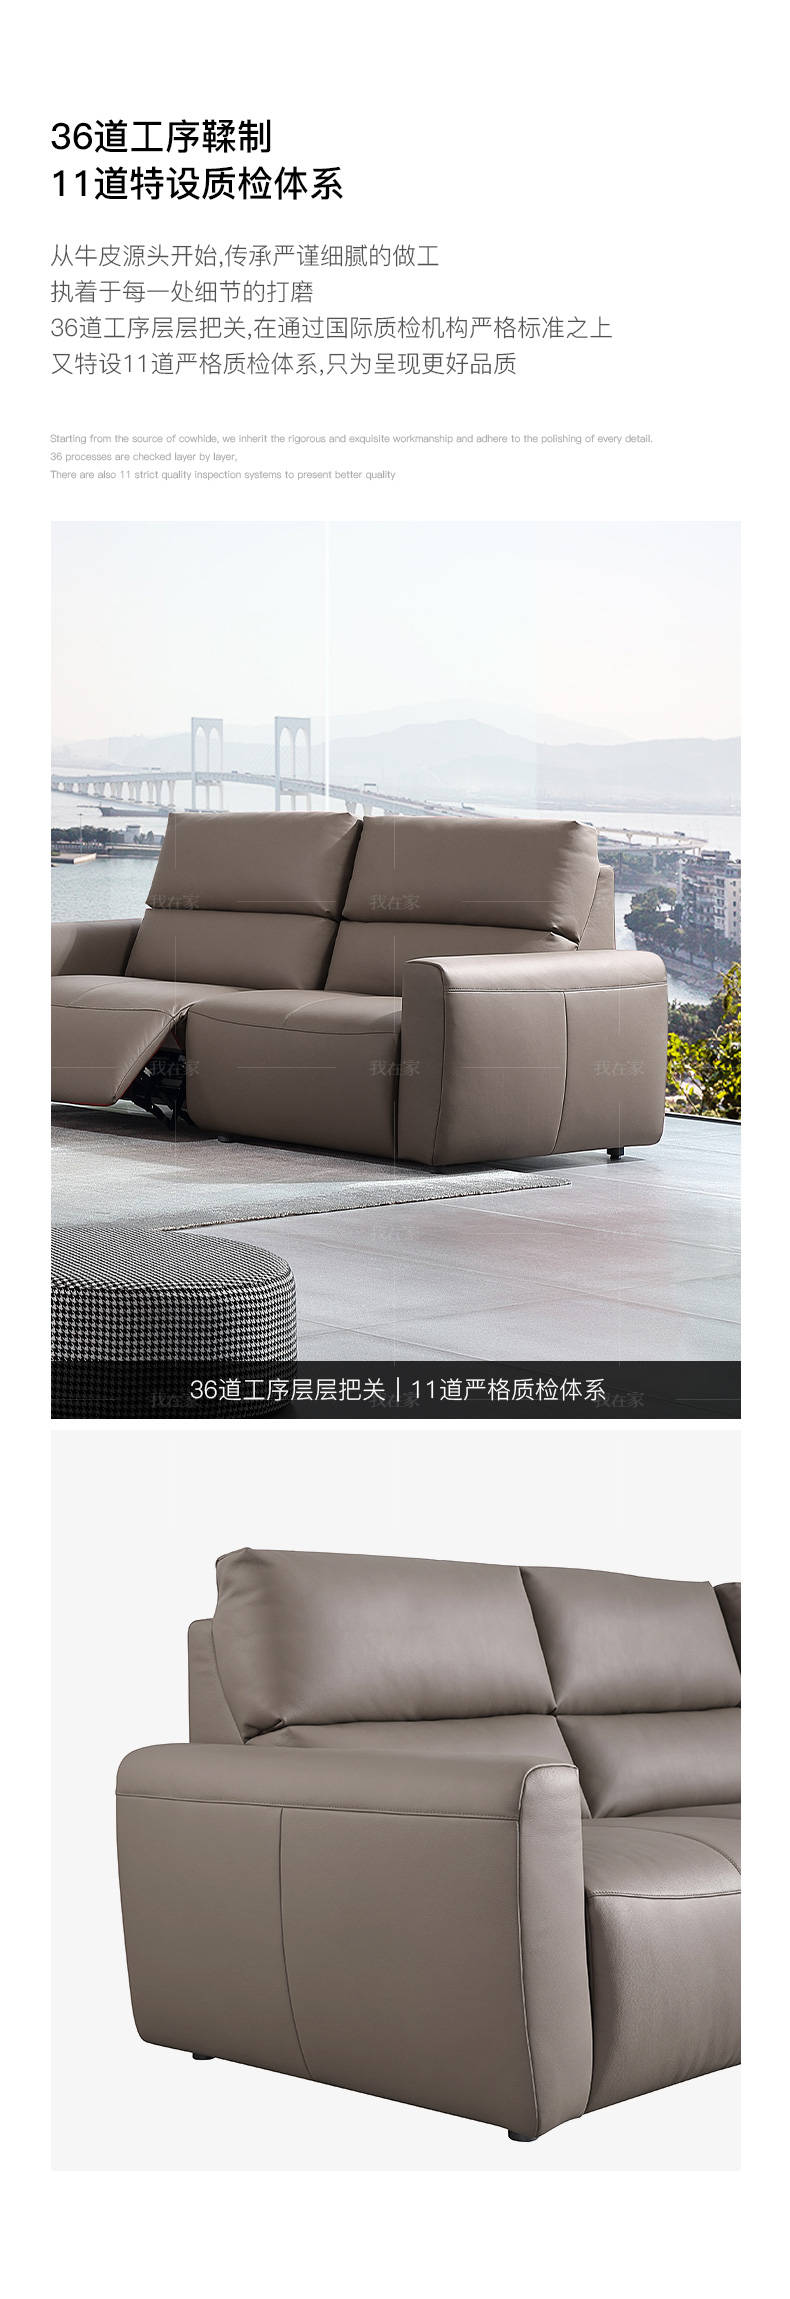 现代简约风格亚米奇功能沙发的家具详细介绍